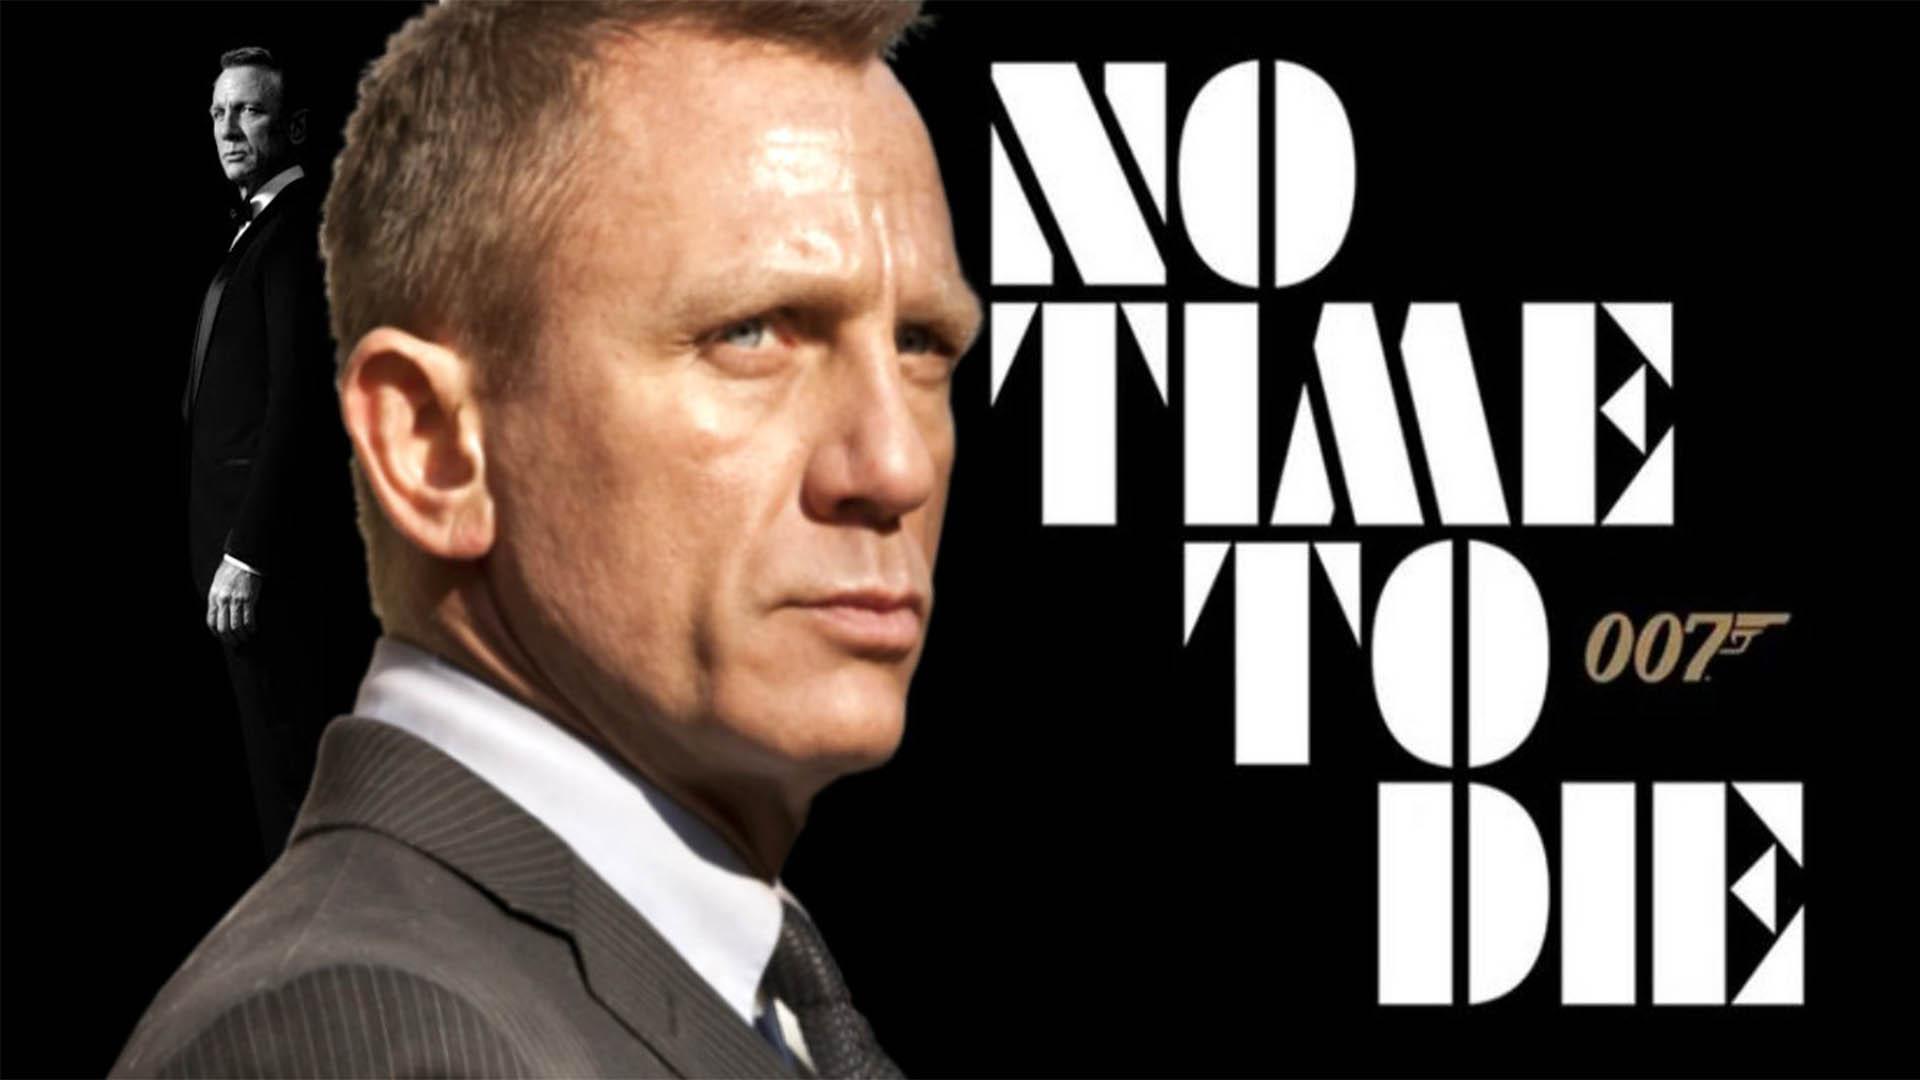 Pubblicato il Teaser Poster Ufficiale Italiano di 007 No